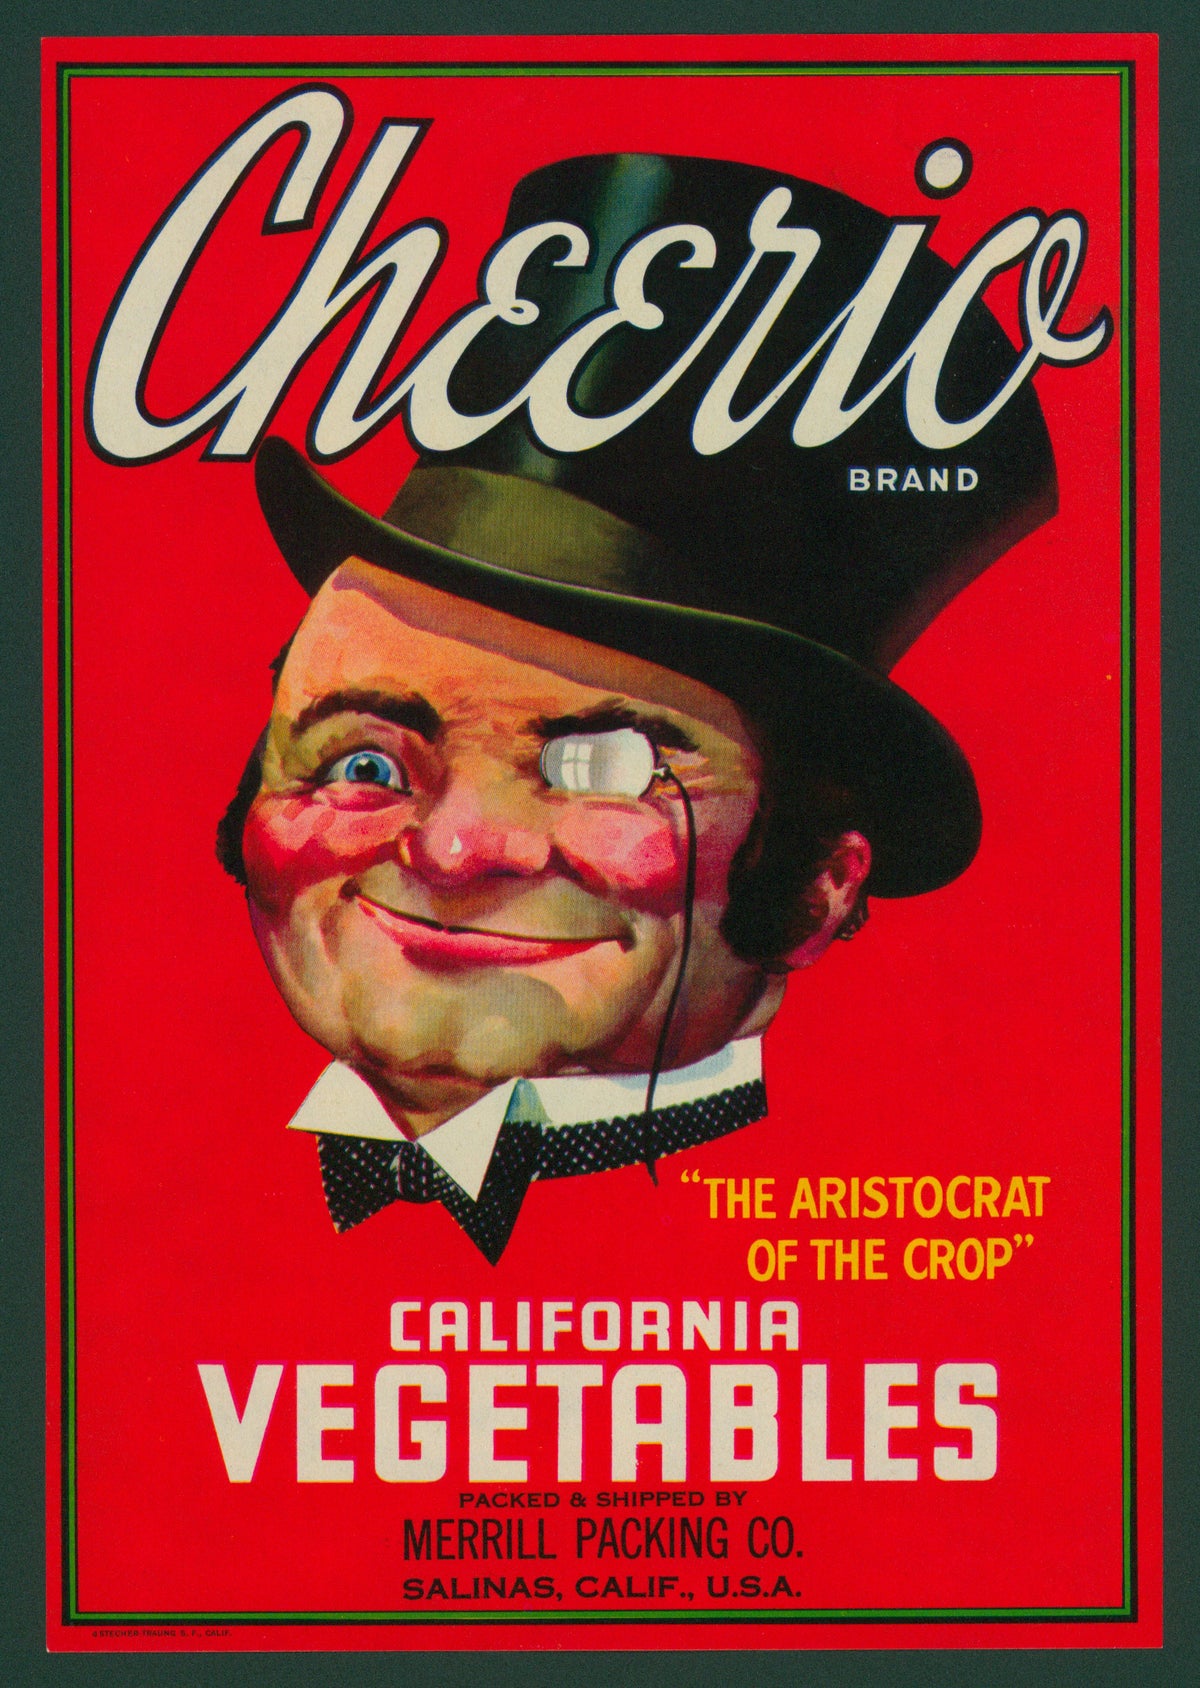 Cheerio California Vegetables - Crate Label - Authentic Vintage Antique Print